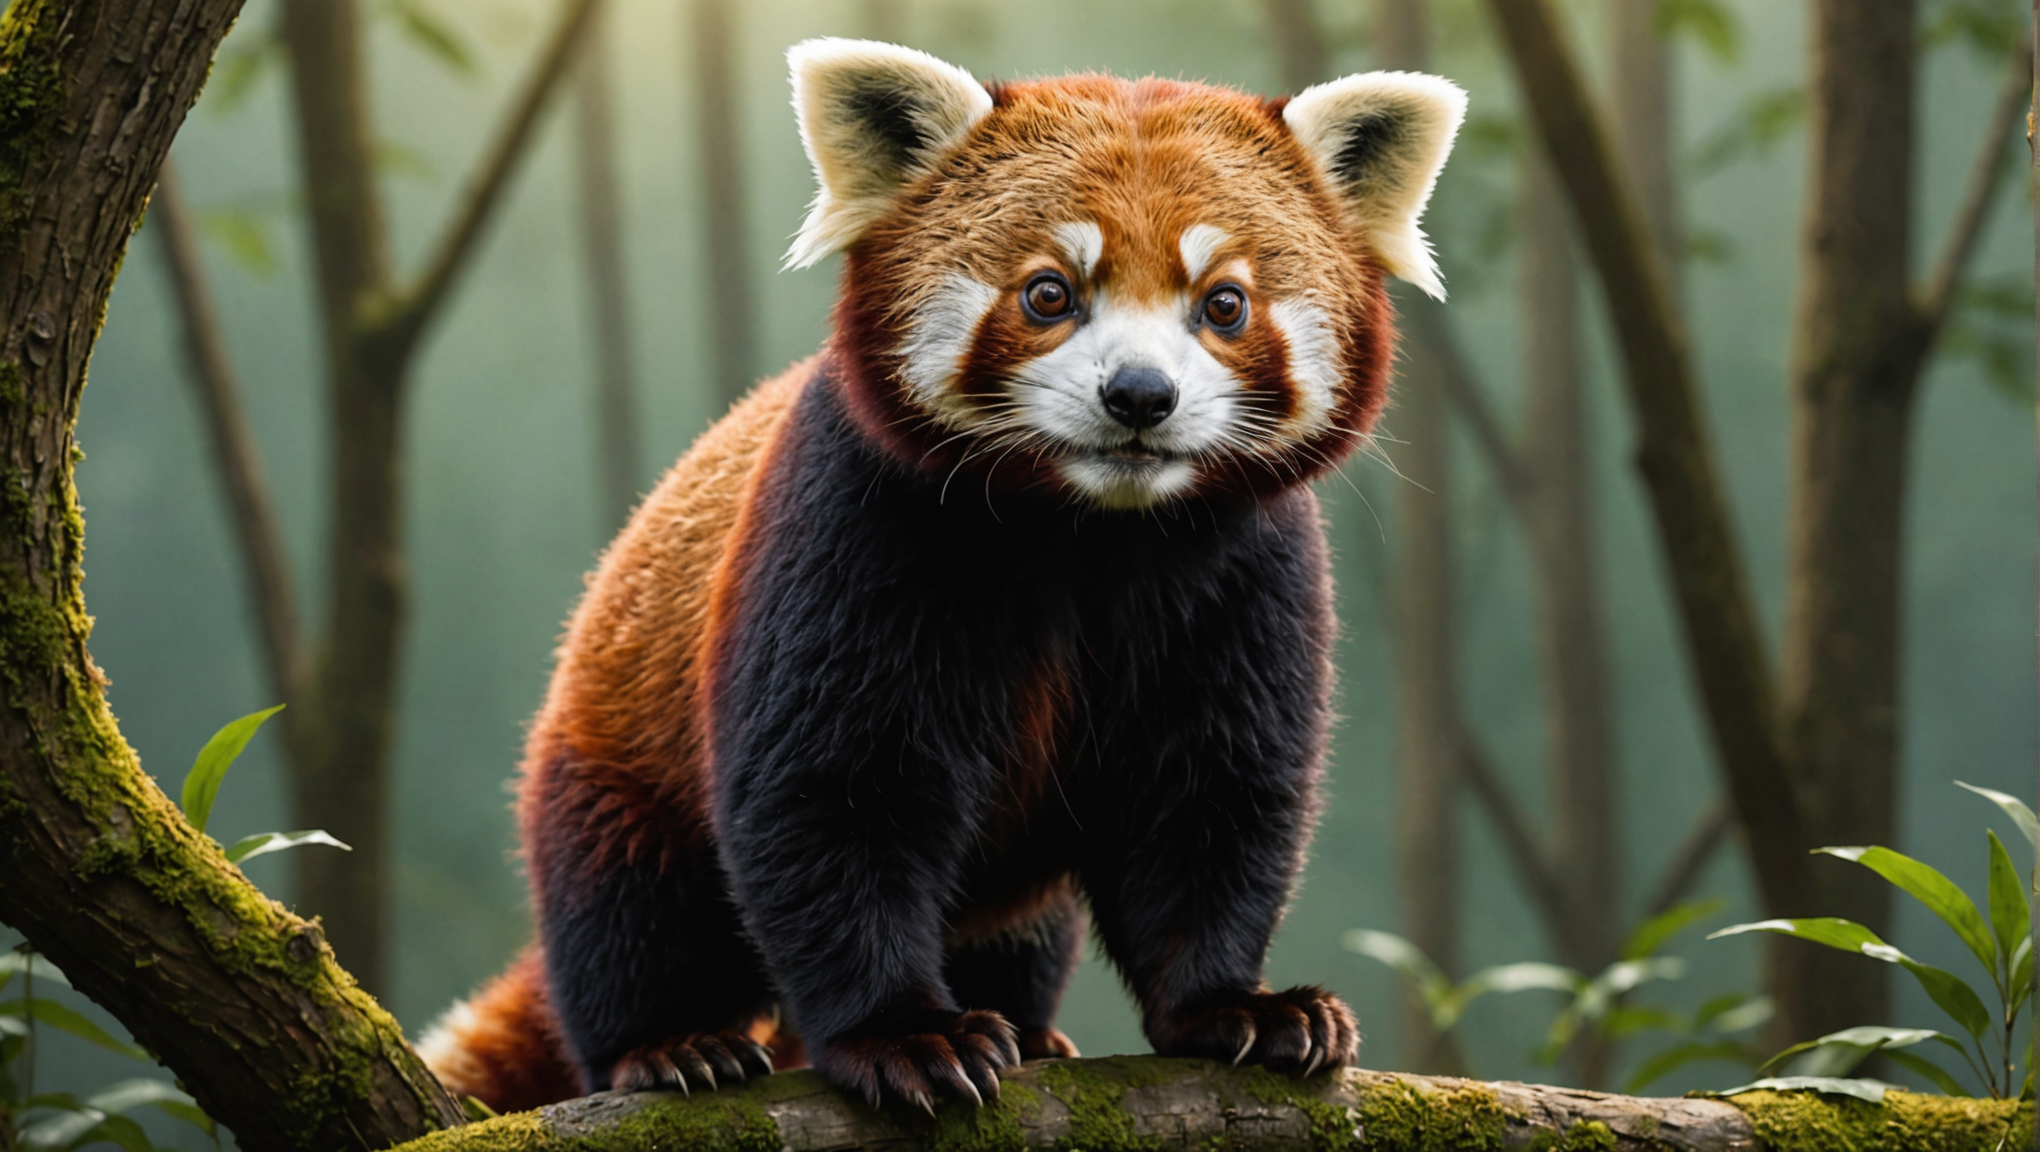 découvrez si le panda roux peut se tenir debout et apprenez-en plus sur ce fascinant animal : son comportement, son habitat et sa place dans la nature.